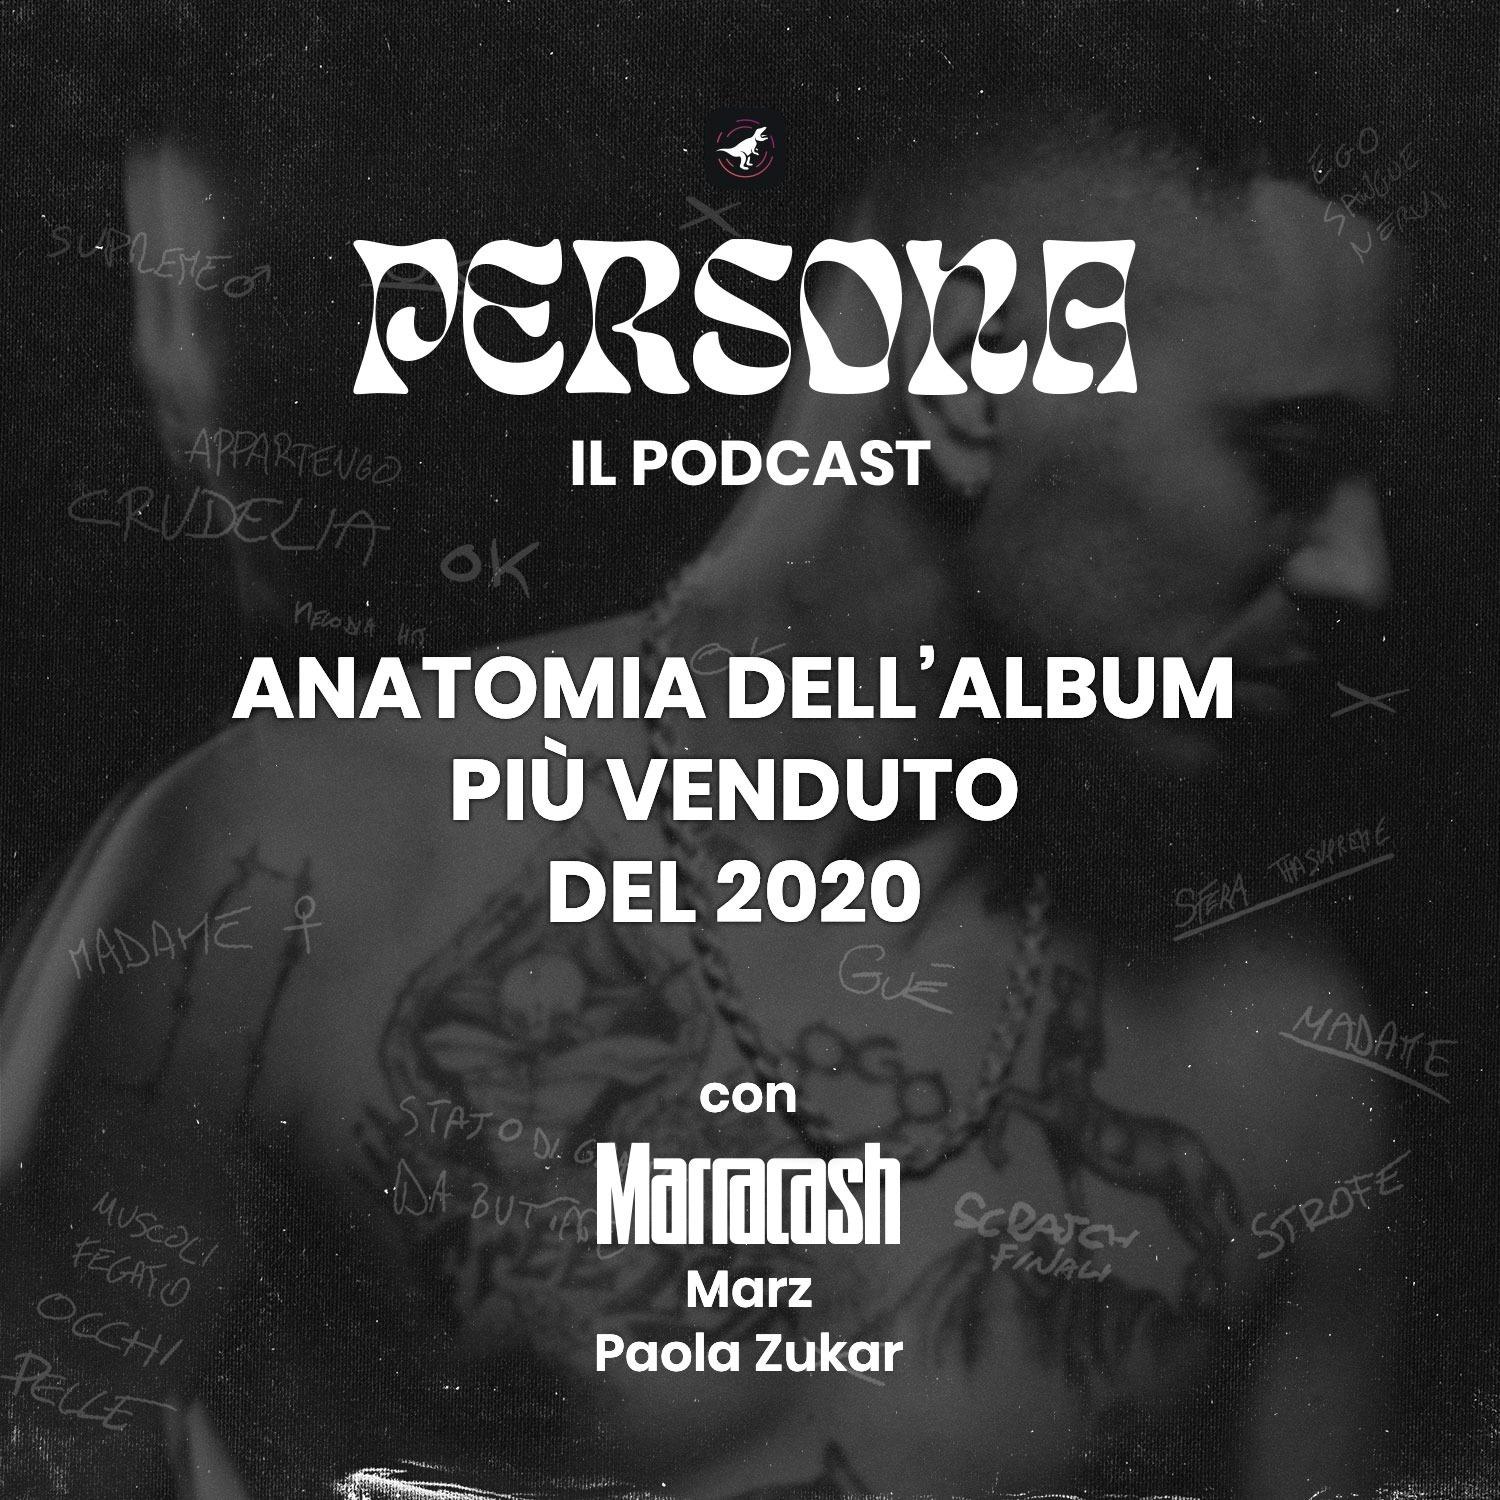 Persona, il podcast. Anatomia dell’album più venduto del 2020.